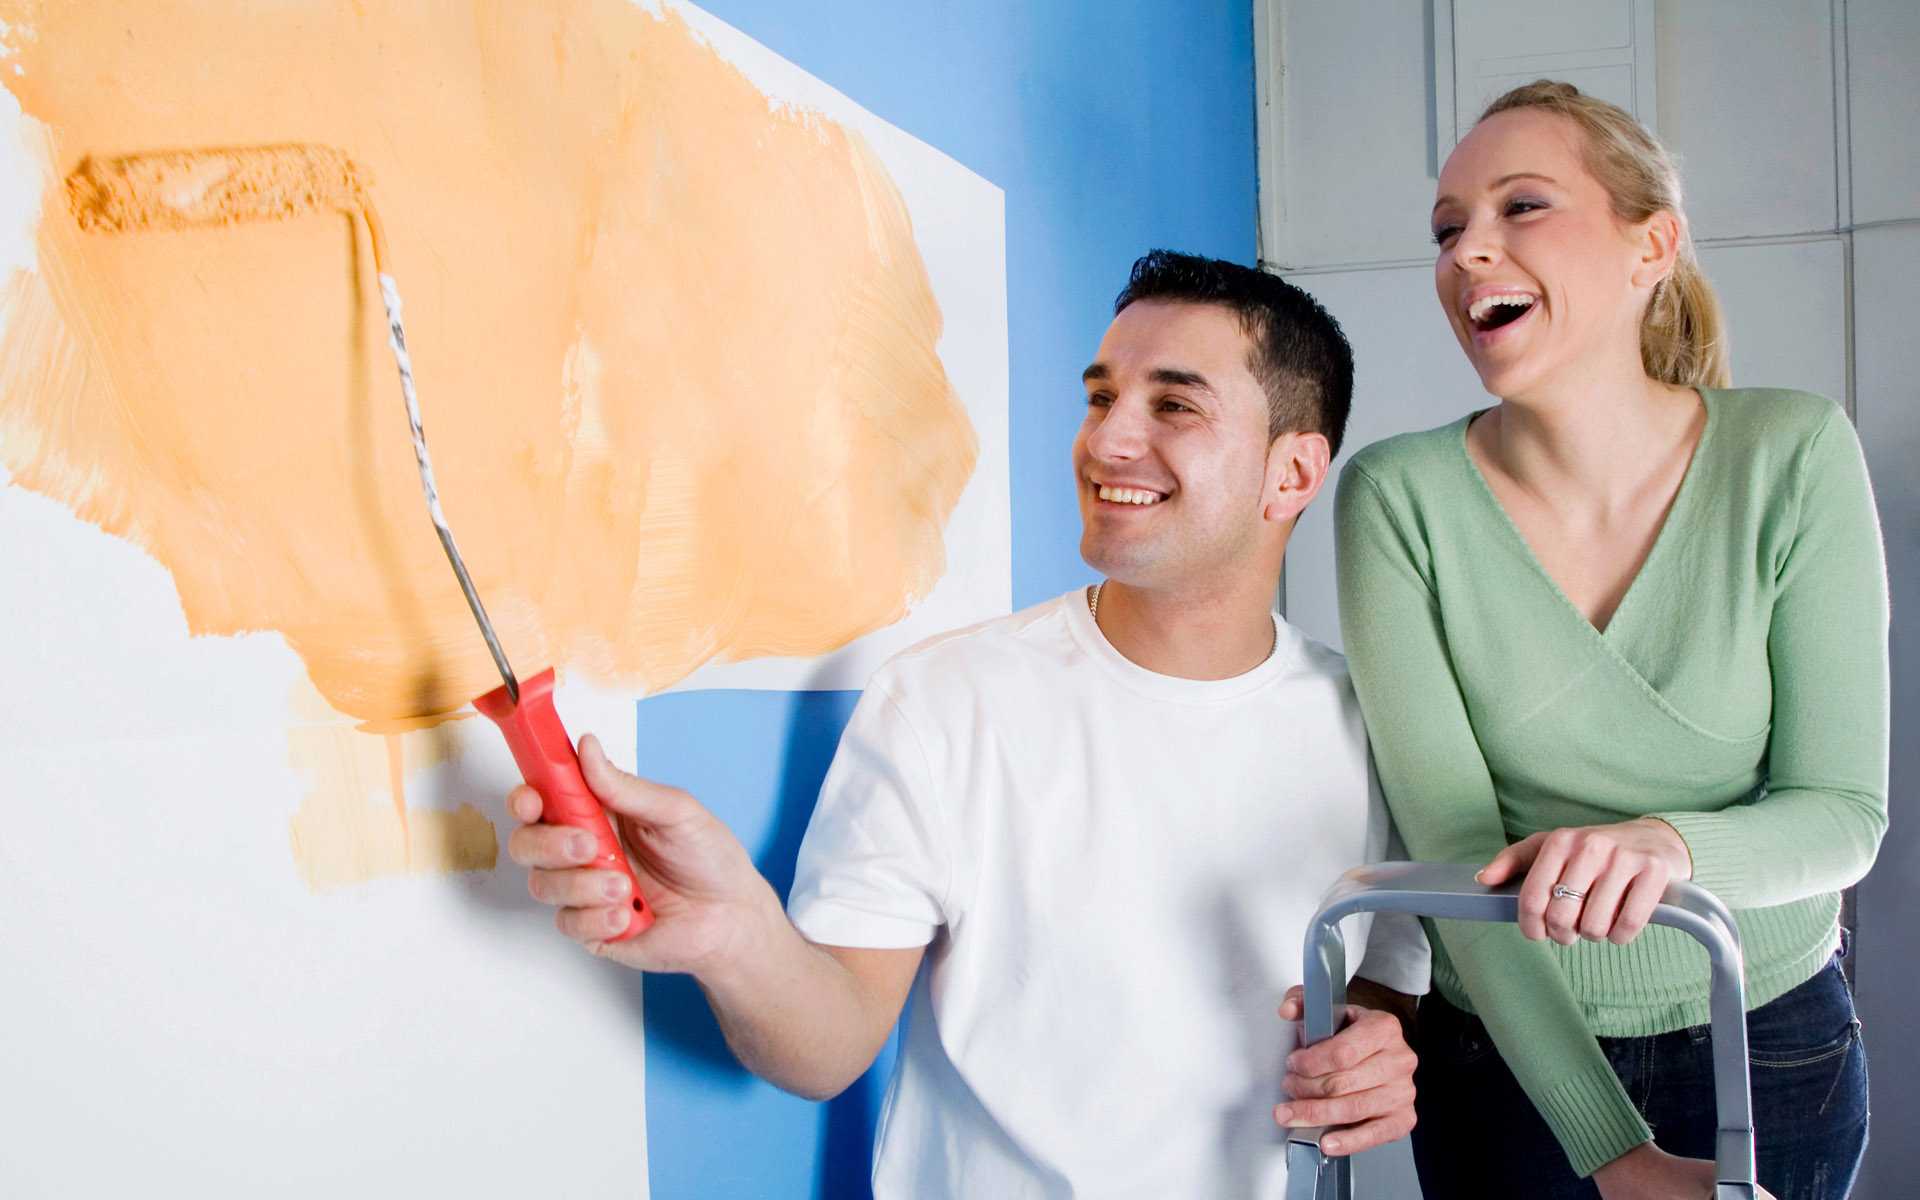 Ремонт весел. Крашенные стены. Люди делают ремонт в квартире. Покраска стен семья. Клеить обои.